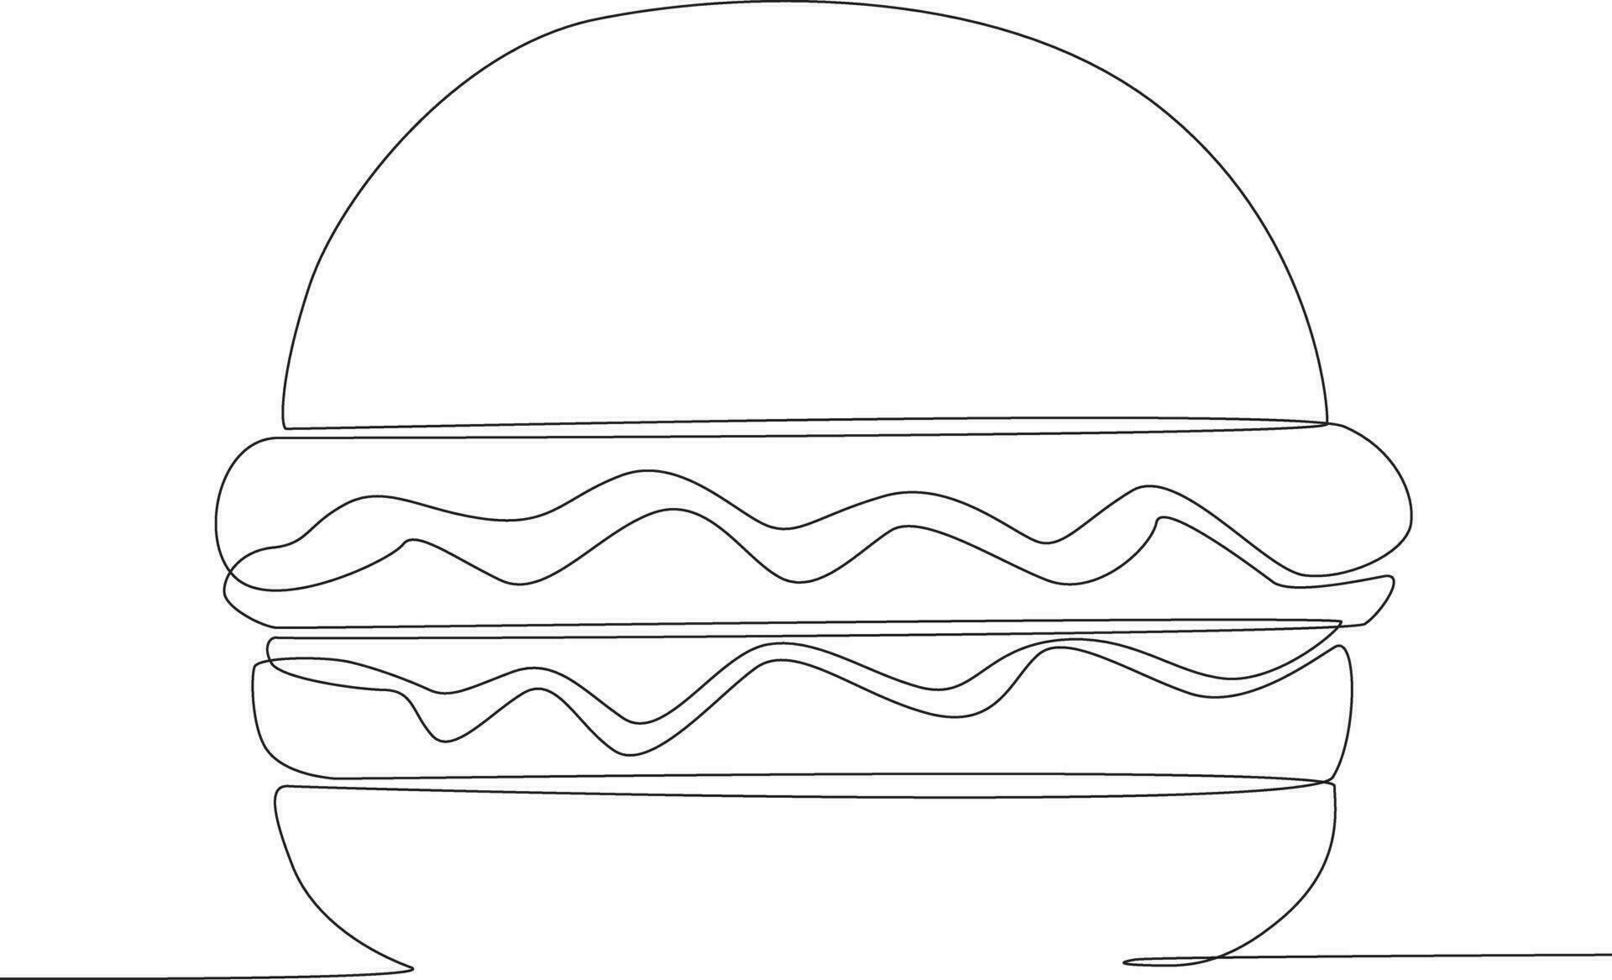 Single kontinuierlich Linie Zeichnung frisch köstlich Burger. global Tag Elternteil Konzept vektor